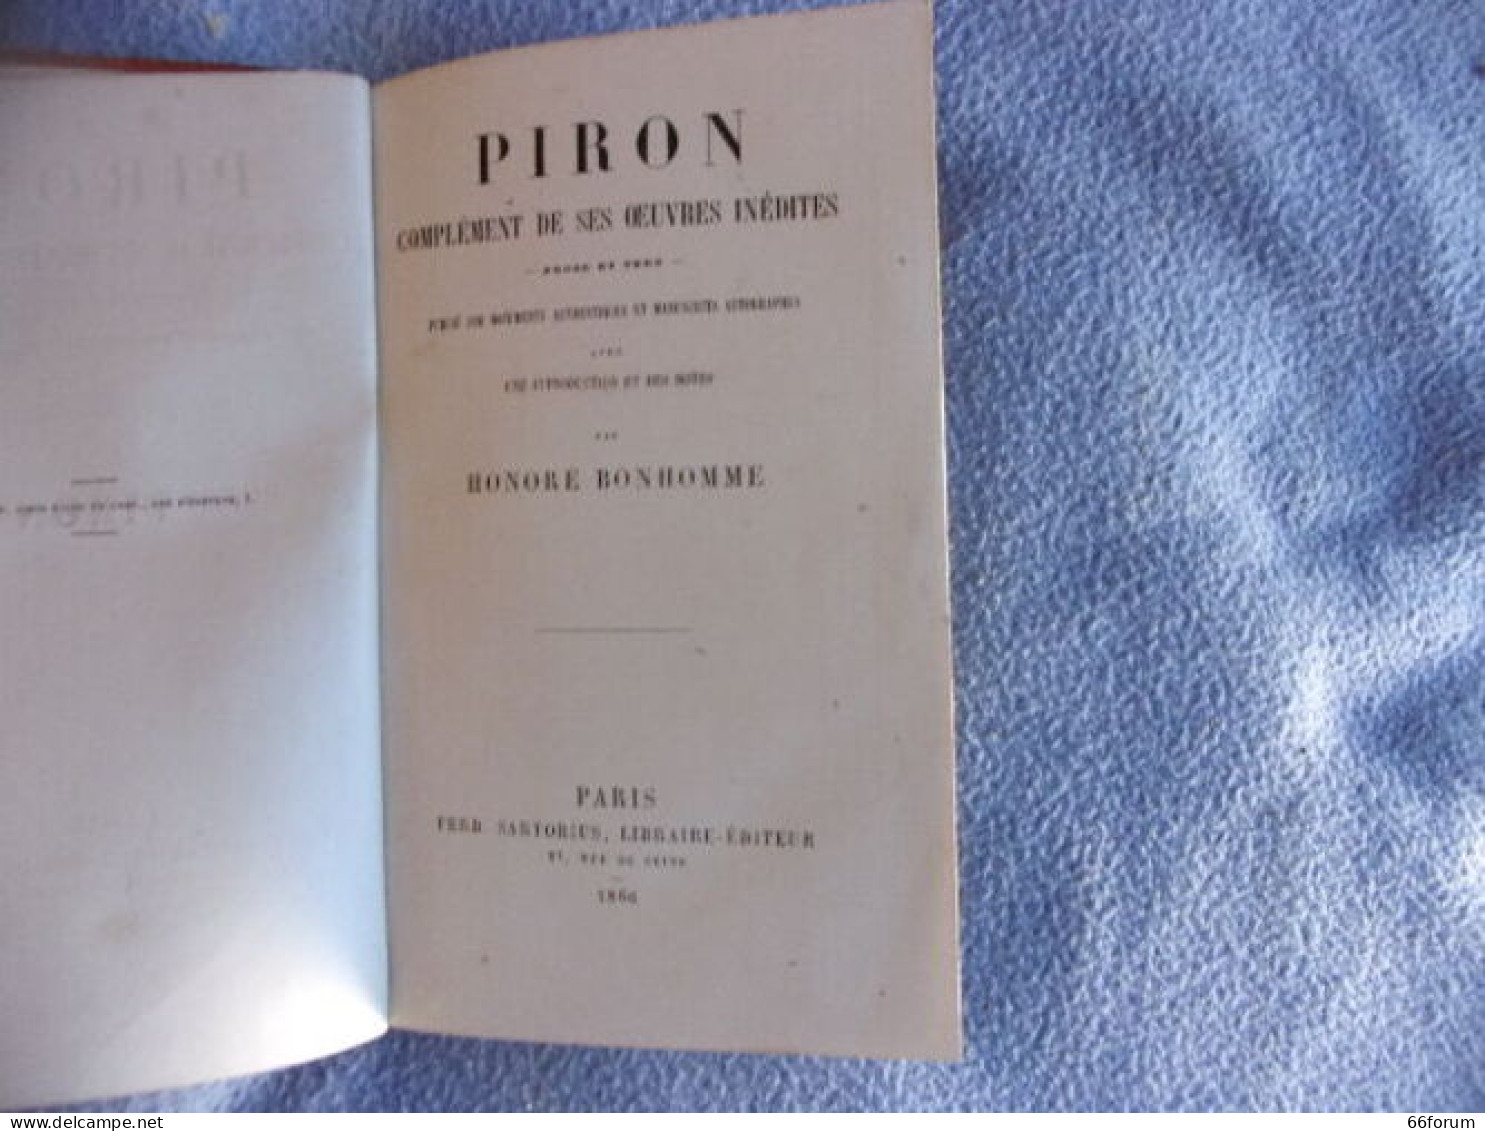 Piron Complément De Ses Oeuvres Inédites - 1701-1800